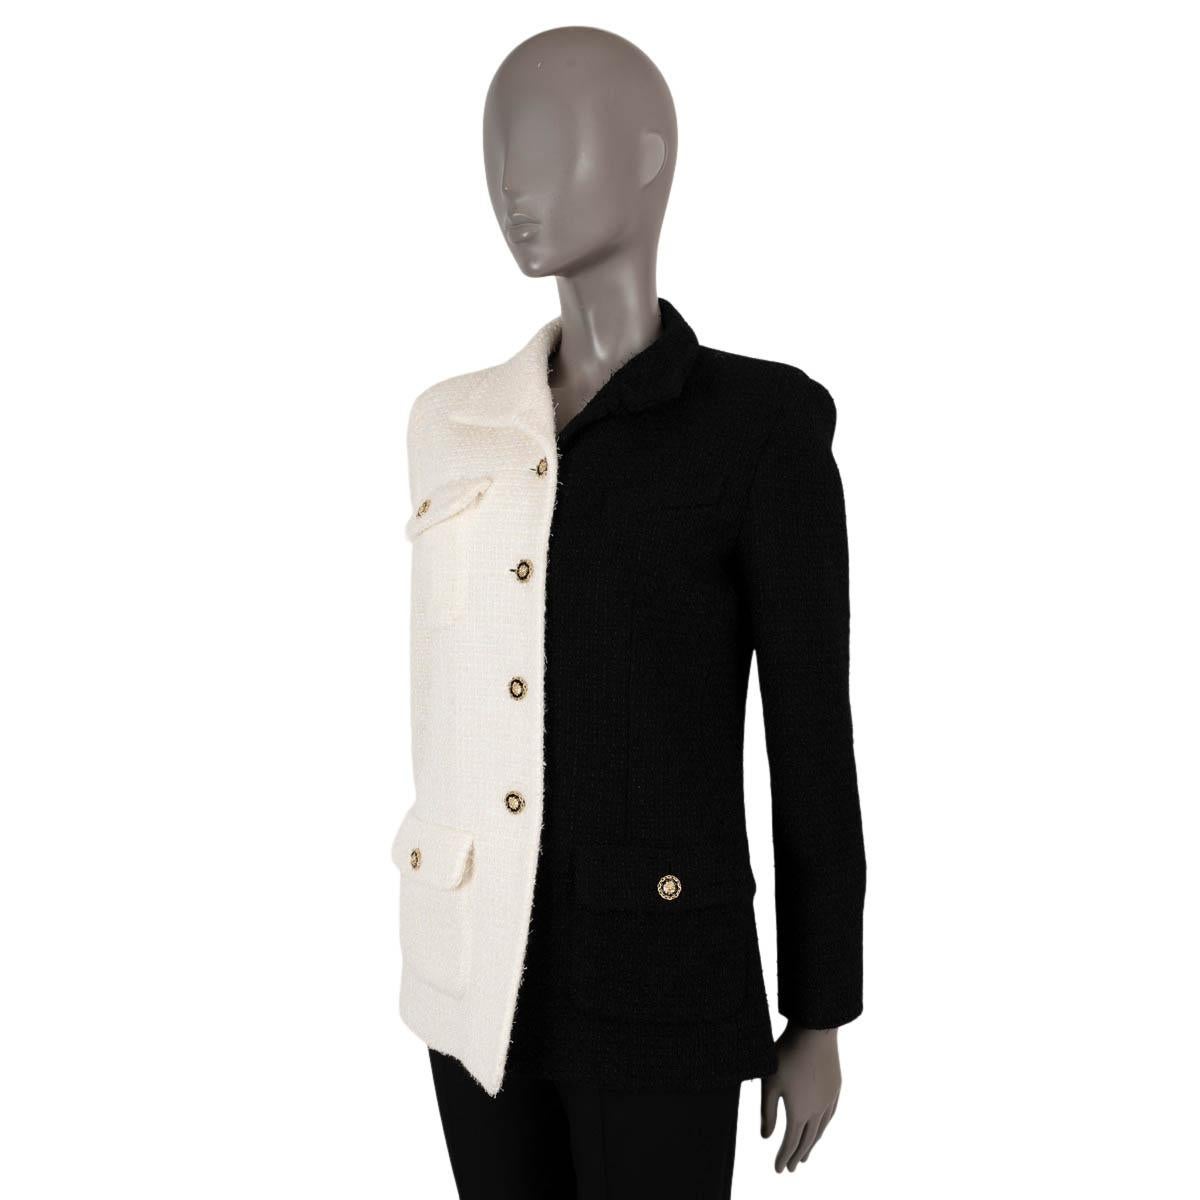 100% authentische Chanel zweifarbige Tweedjacke aus weißer und schwarzer Wolle (62%) und Polyamid (38%). Diese kultige Jacke hat drei geknöpfte Pattentaschen und einen asymmetrischen Kragen. Schließt mit goldfarbenen Löwenkopfknöpfen und ist mit